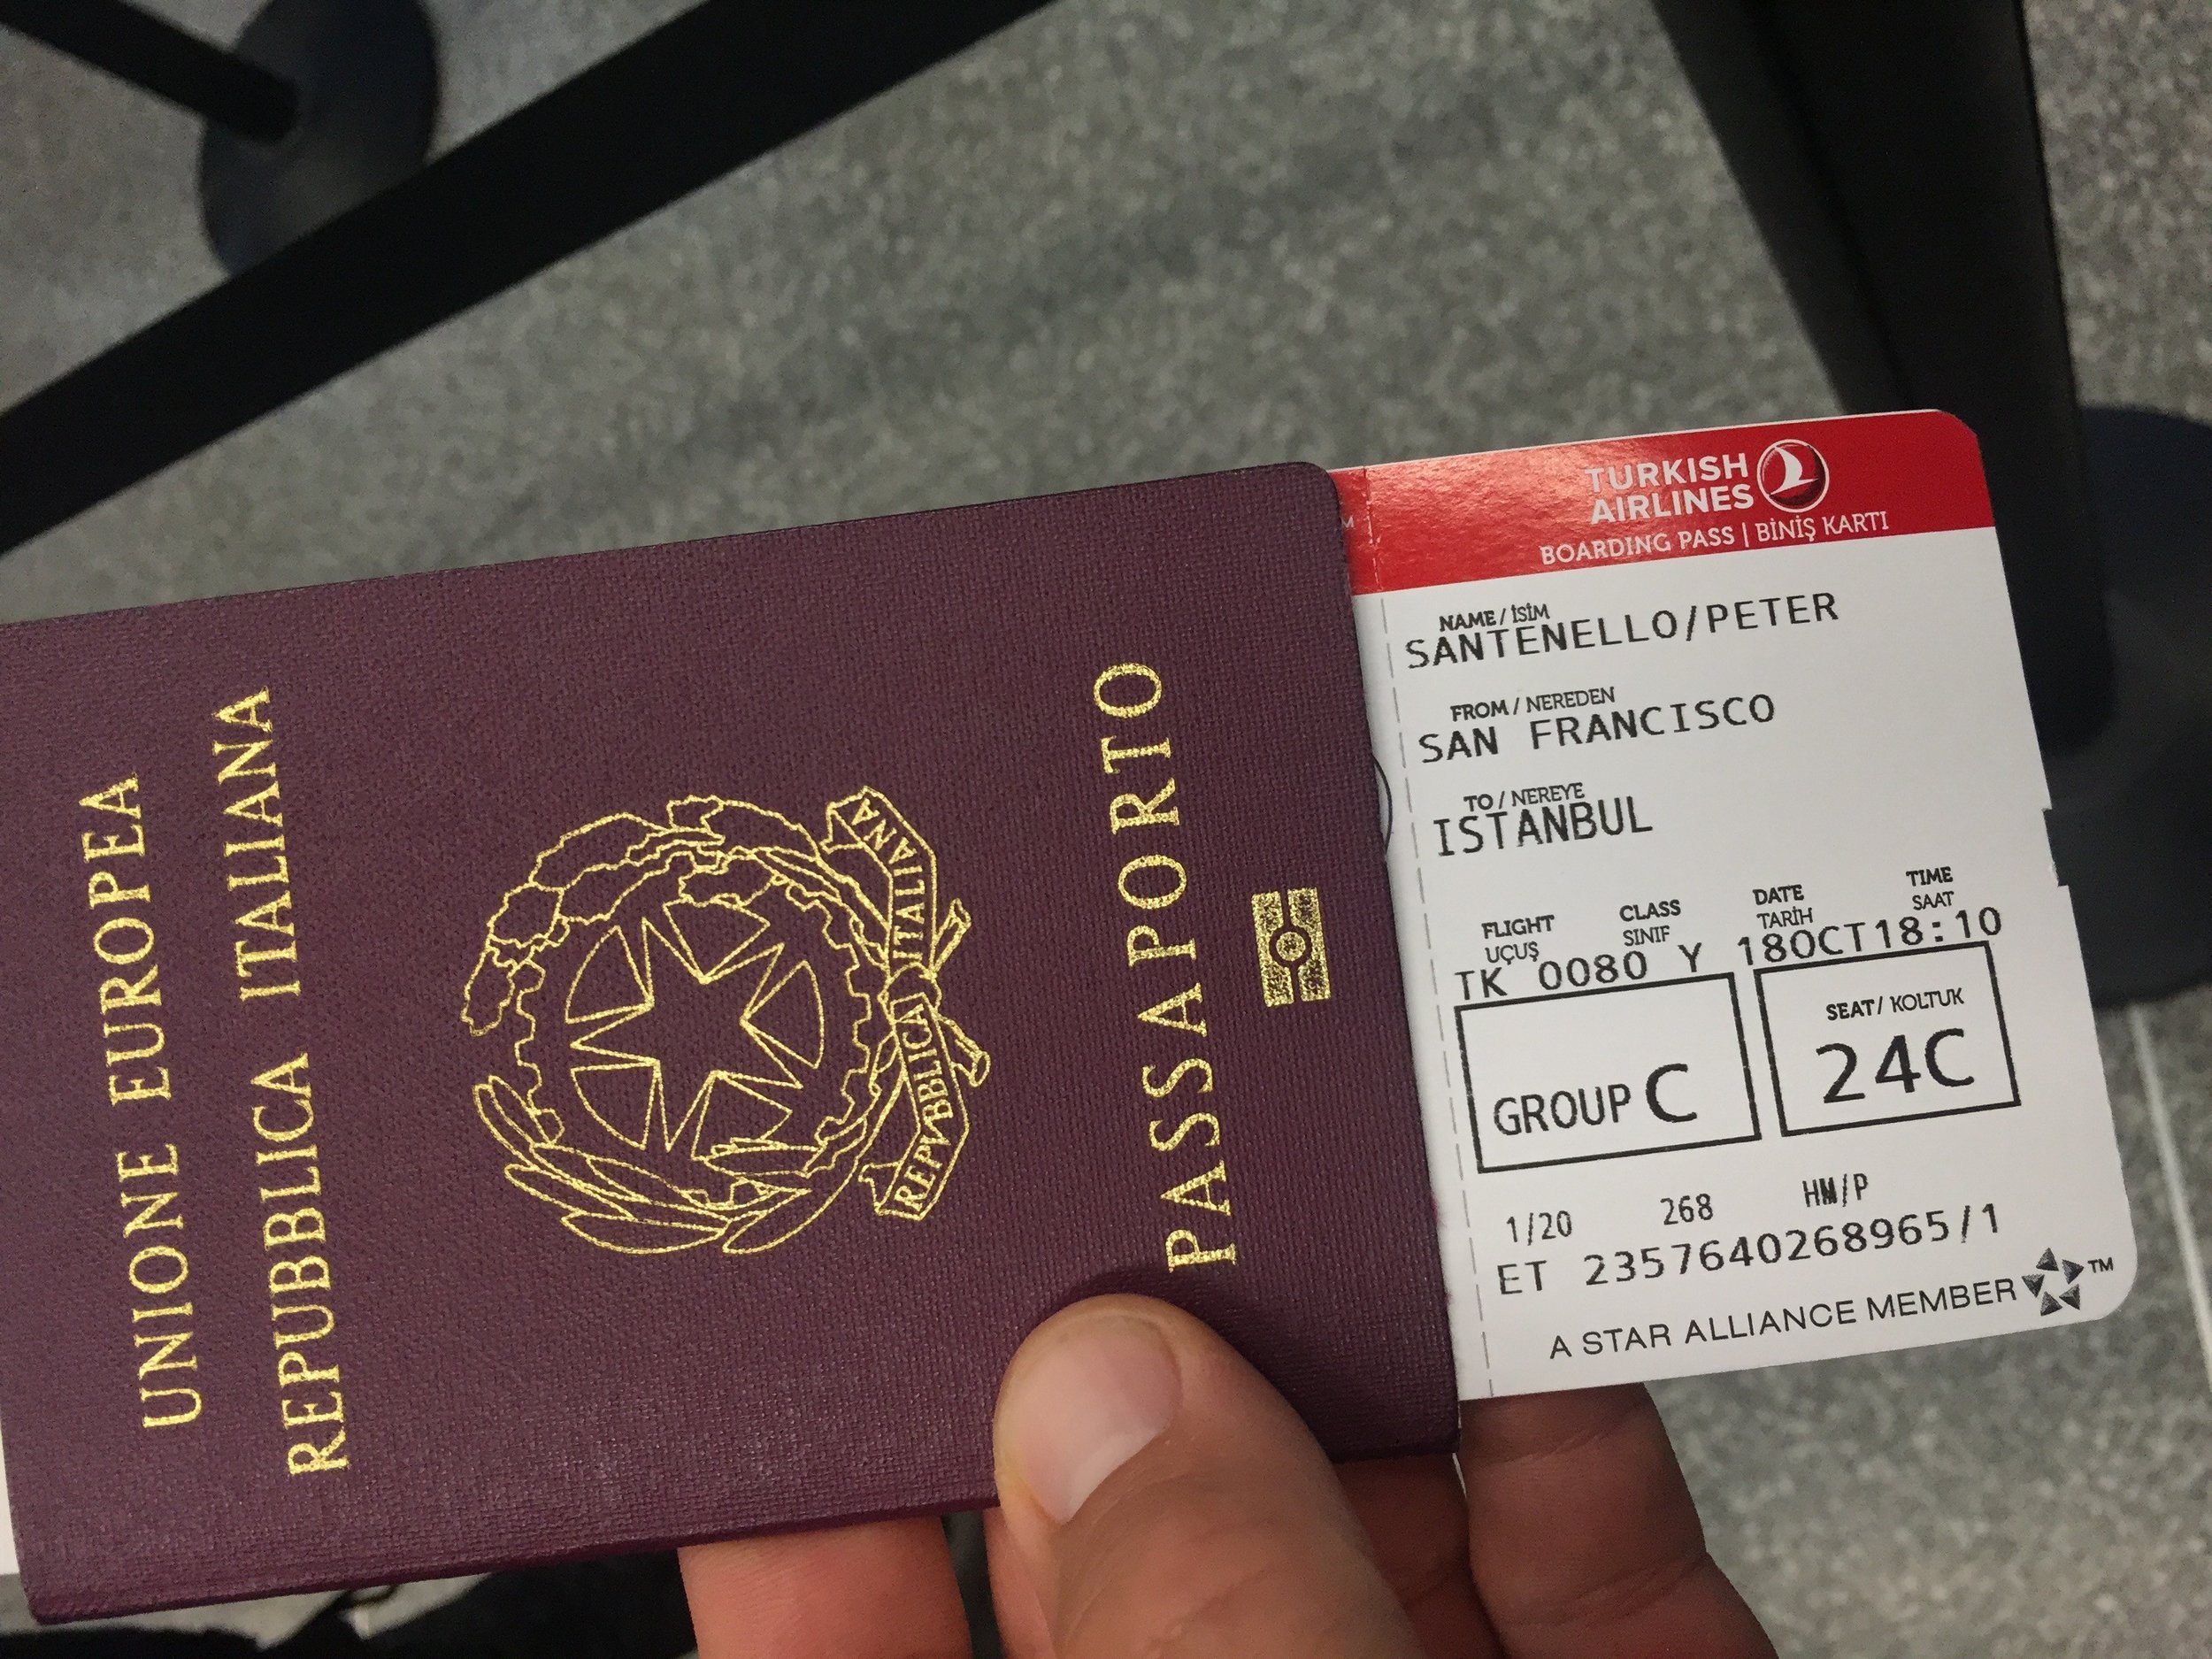 Italian passport and boarding pass